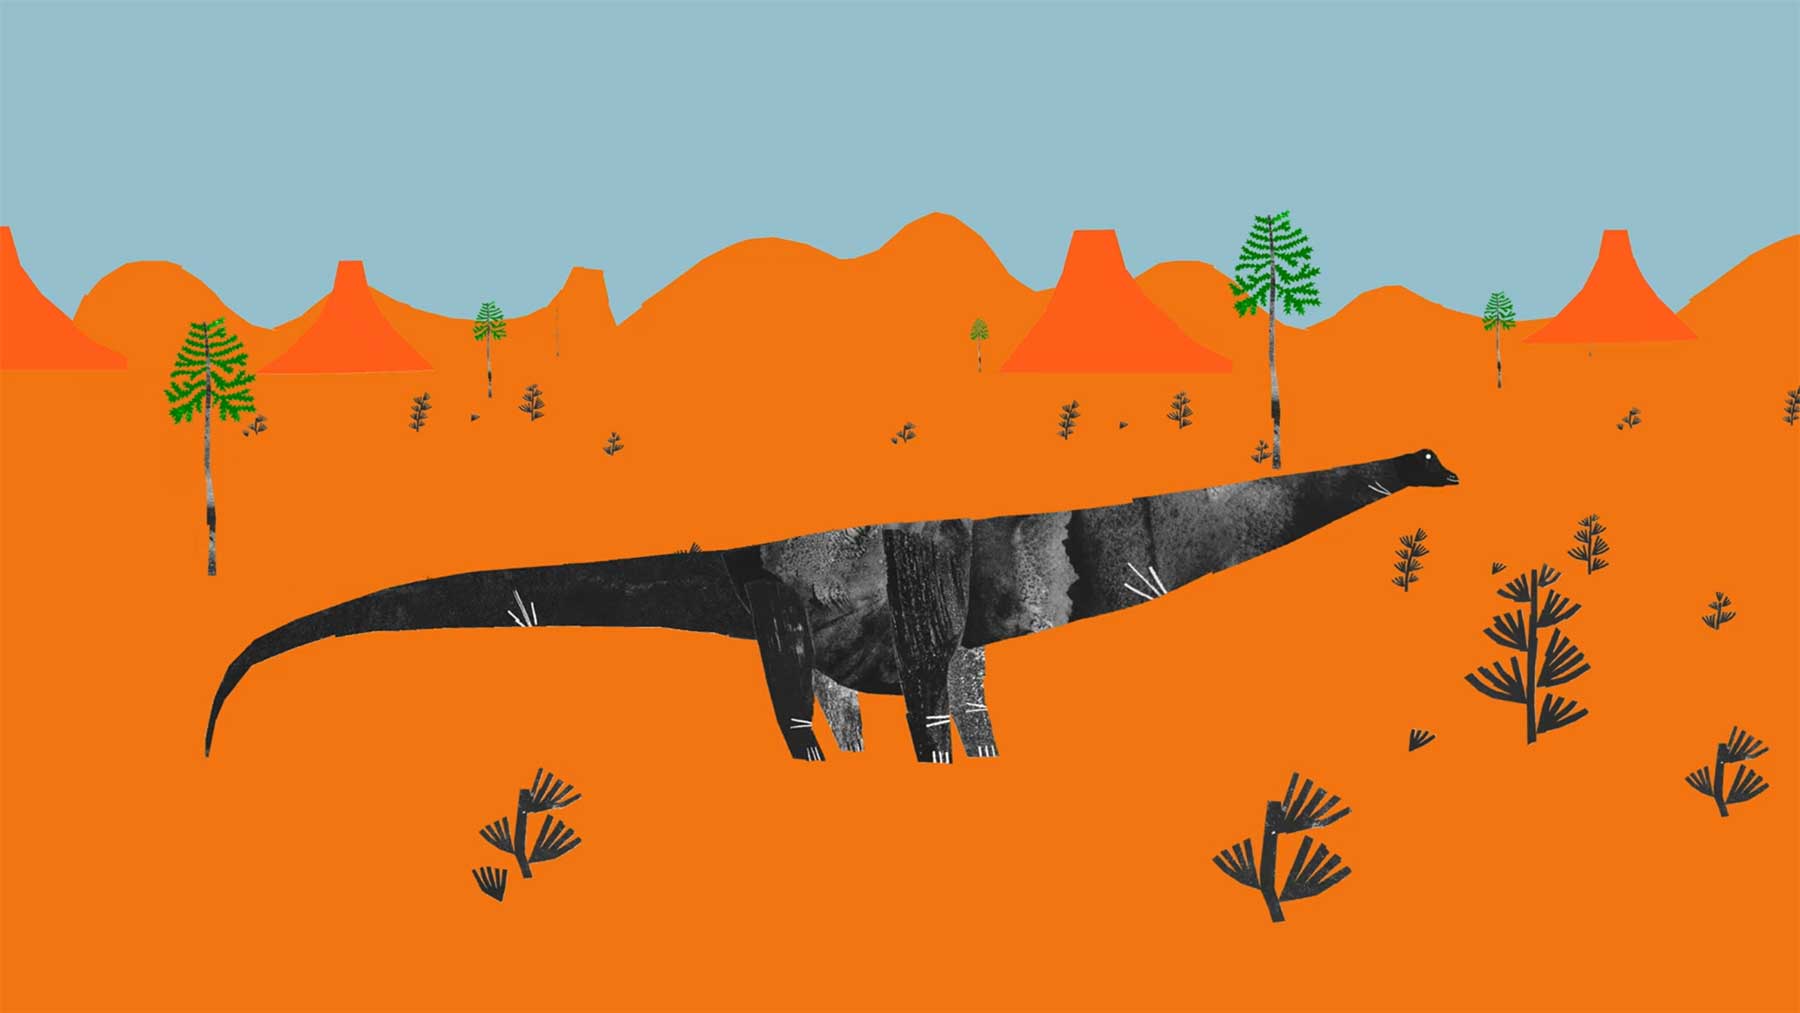 Der Titanosaurus war der größte Dinosaurier, der jemals gelebt hat